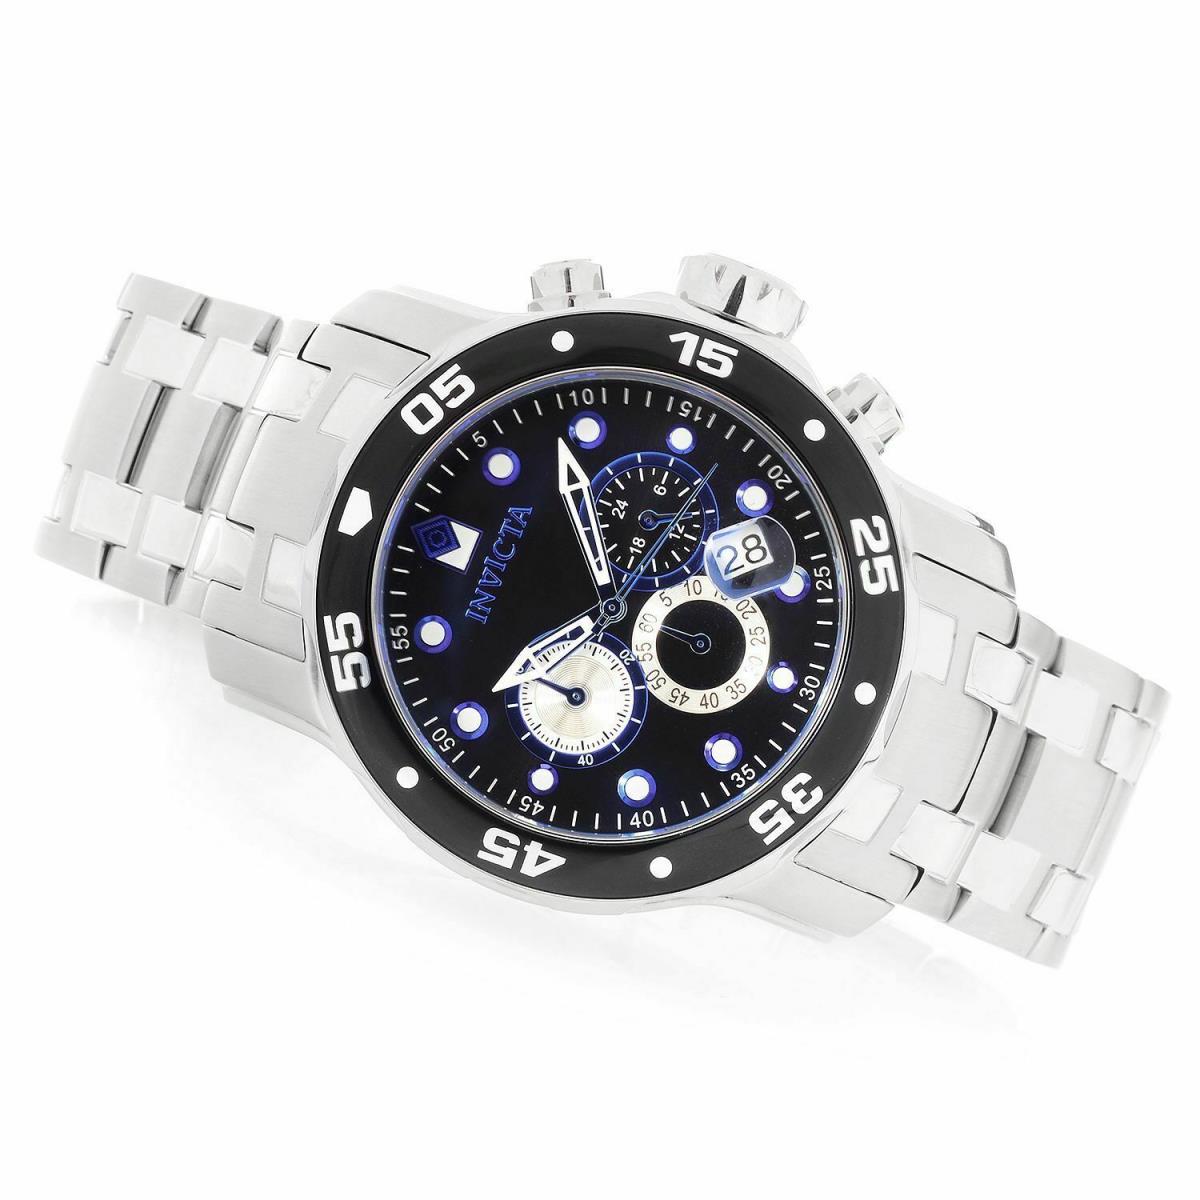 Invicta 24848 Pro Diver Scuba Black Dial Quartz Chronograph Bracelet Men`s Watch - Black Dial, Silver Band, Black Bezel